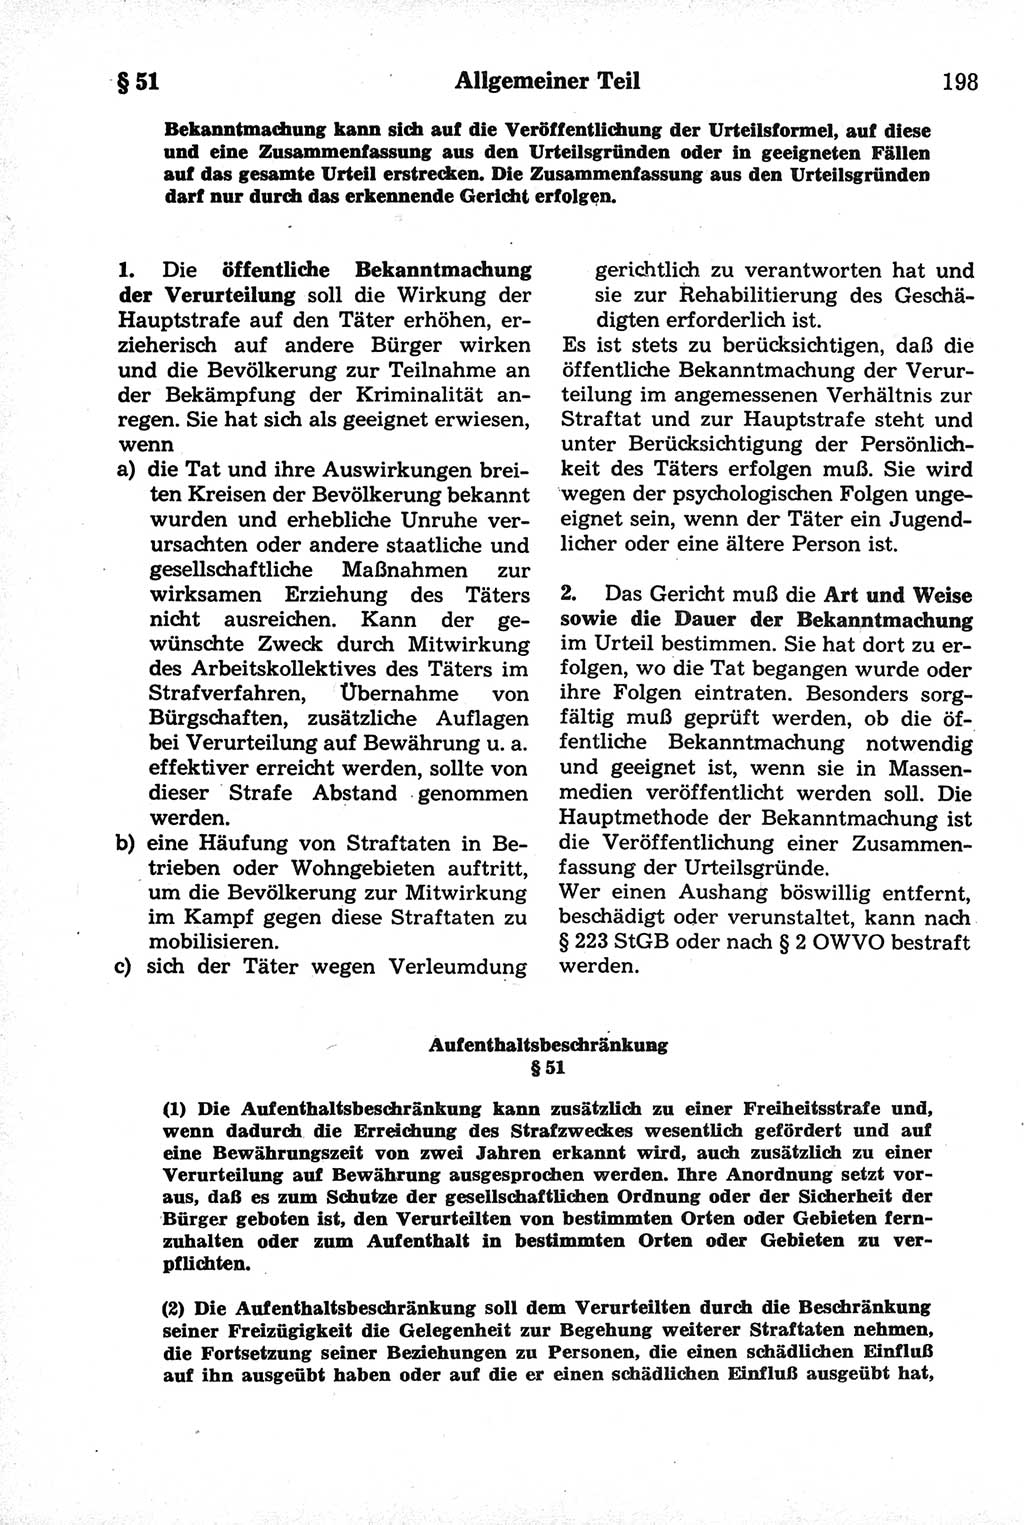 Strafrecht der Deutschen Demokratischen Republik (DDR), Kommentar zum Strafgesetzbuch (StGB) 1981, Seite 198 (Strafr. DDR Komm. StGB 1981, S. 198)